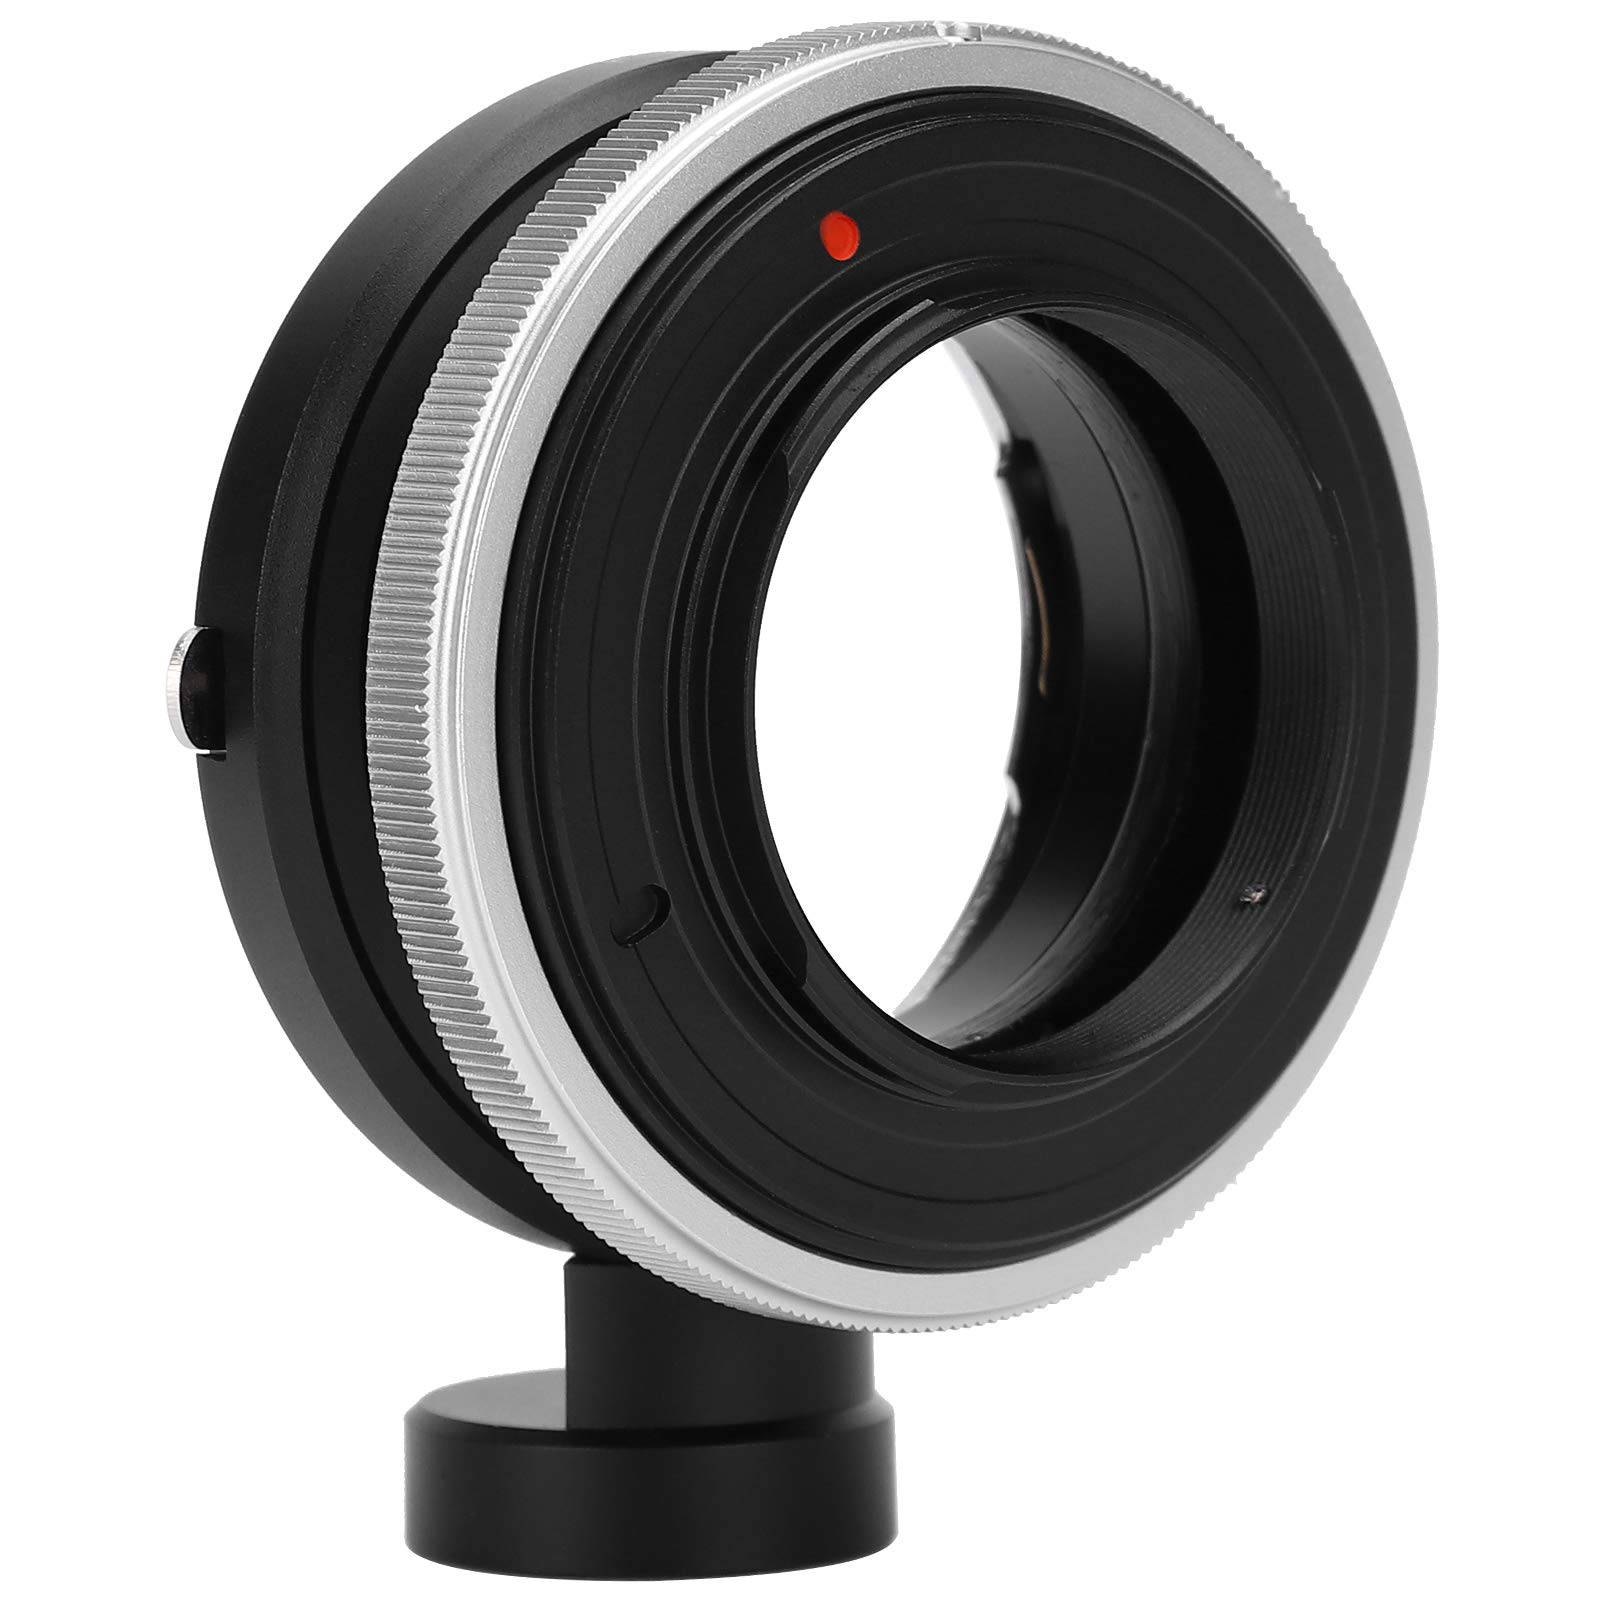 Tilt Shift Adapter Ring - Adapterring für Kamera Objektive Geeignet für Nikon F Mount Lens Transfer für Spiegellose M4 / 3 Kamera